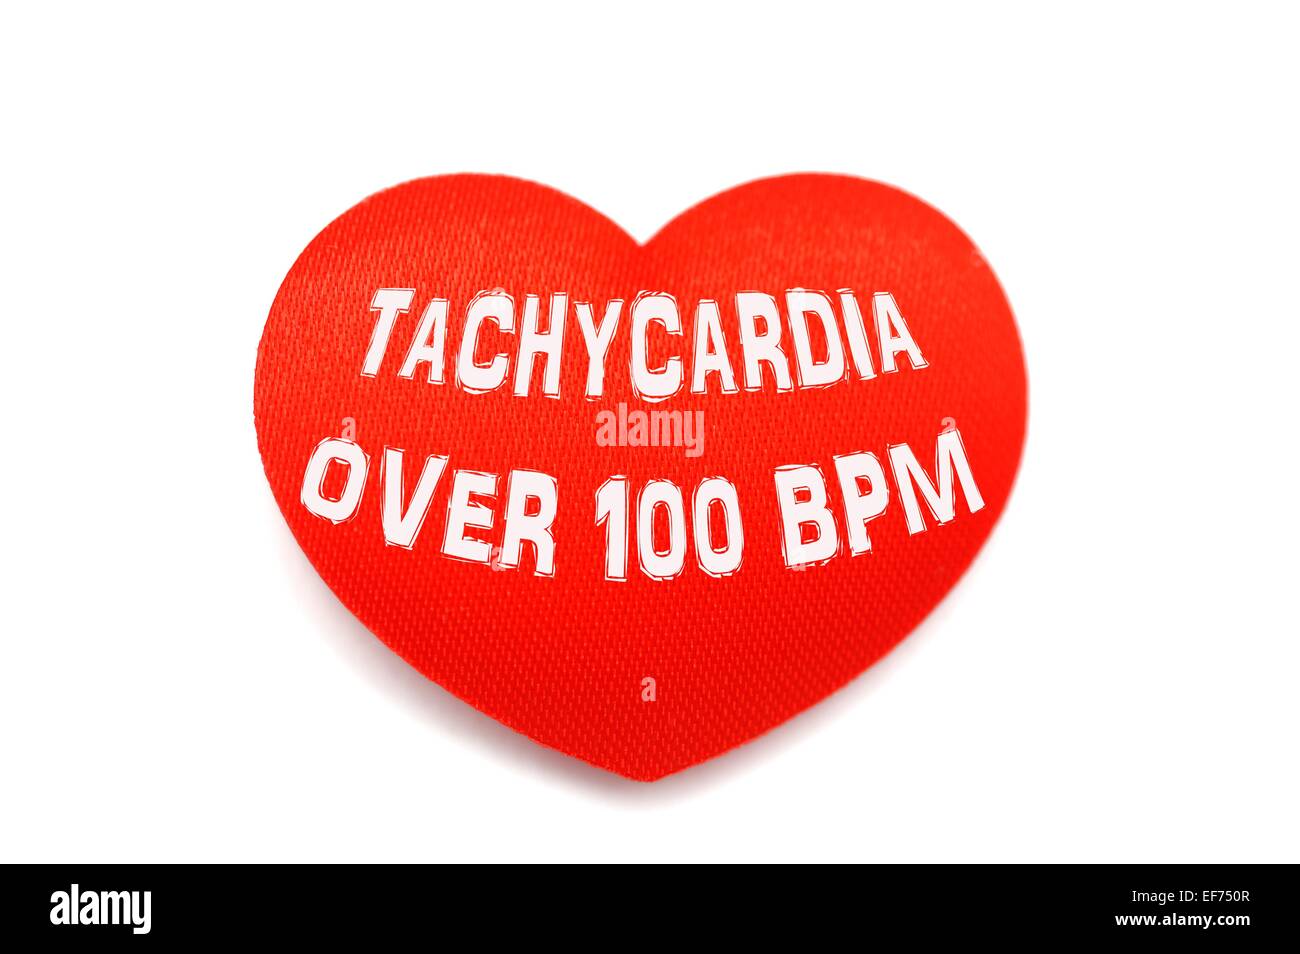 Plus de 100 BPM tachycardie sur une forme de coeur rouge Banque D'Images